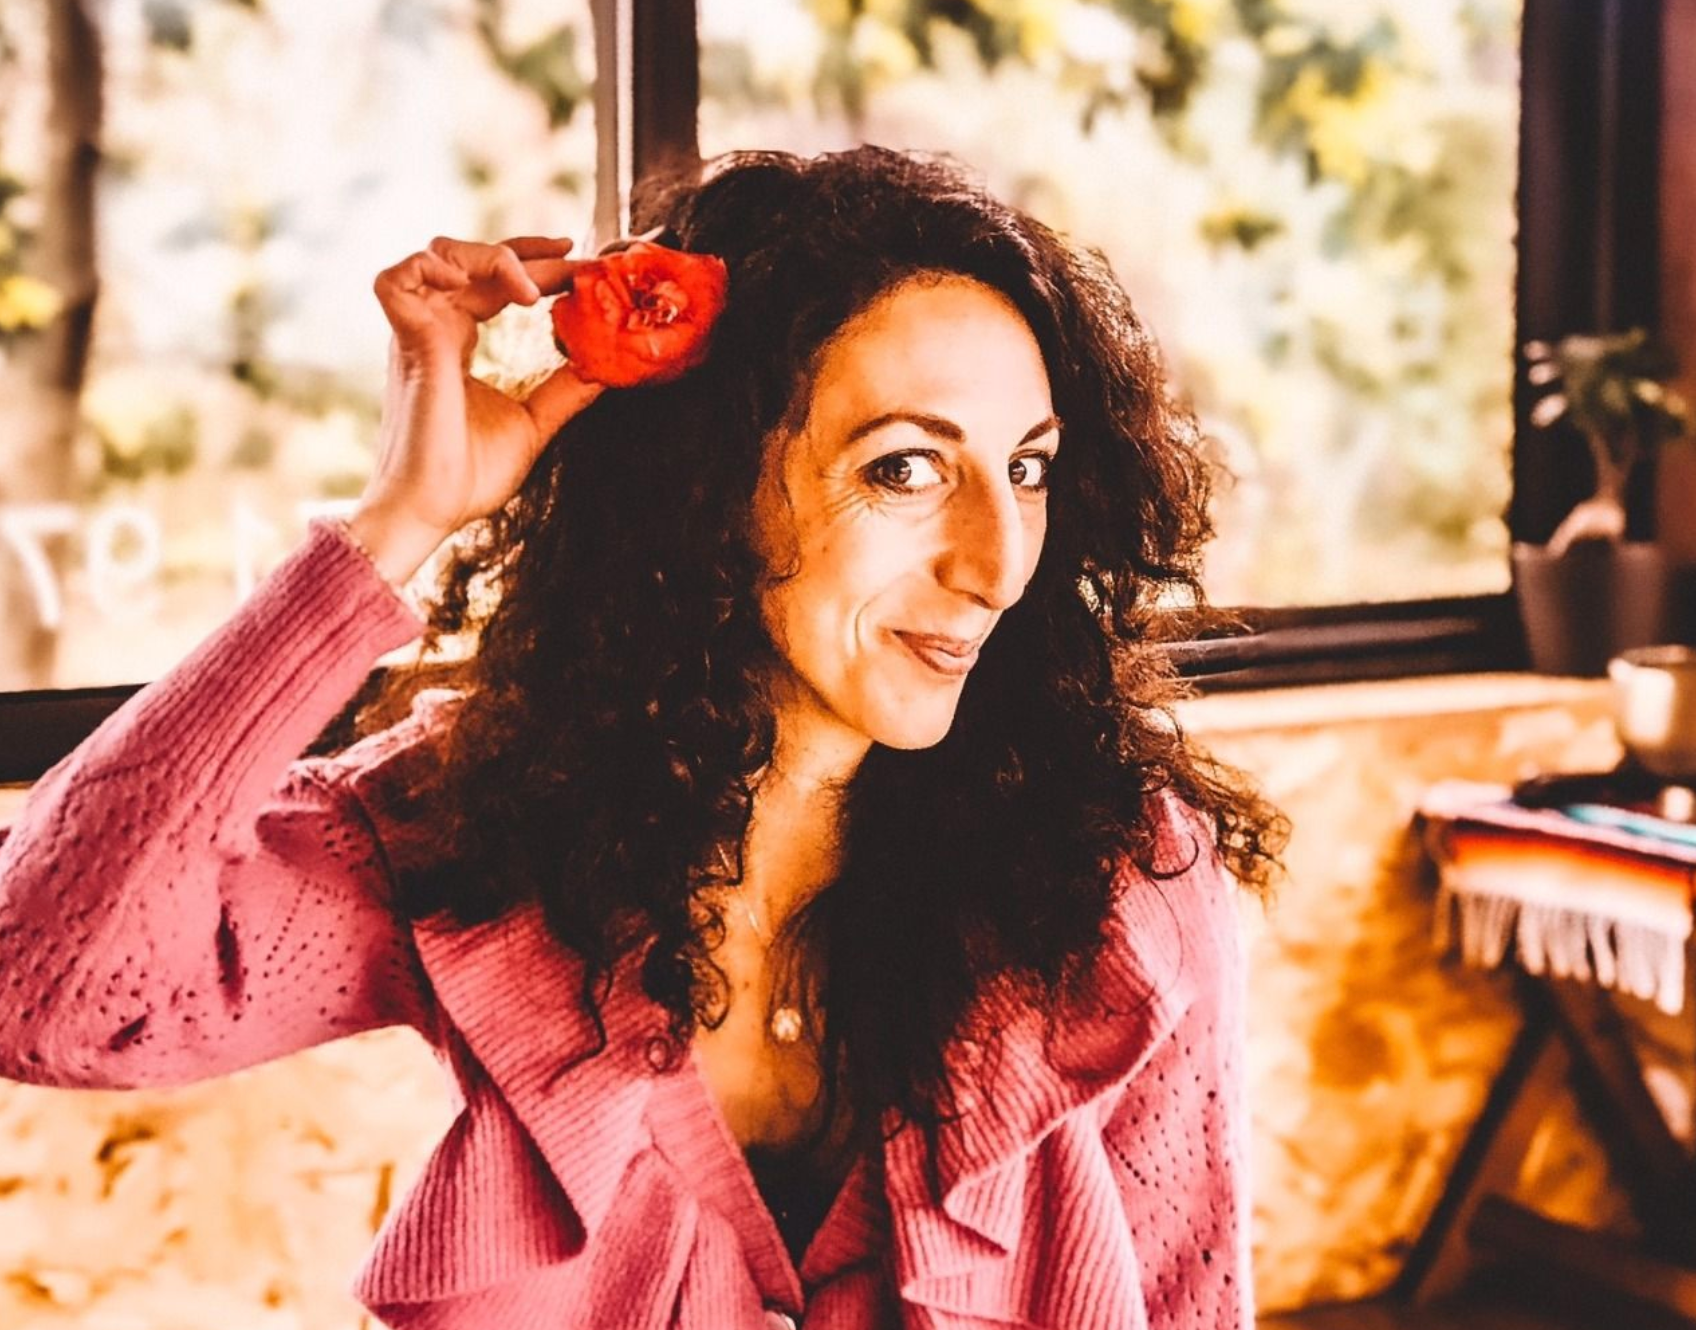 Une femme vêtue d'un pull rose tient une fleur rouge dans ses cheveux.